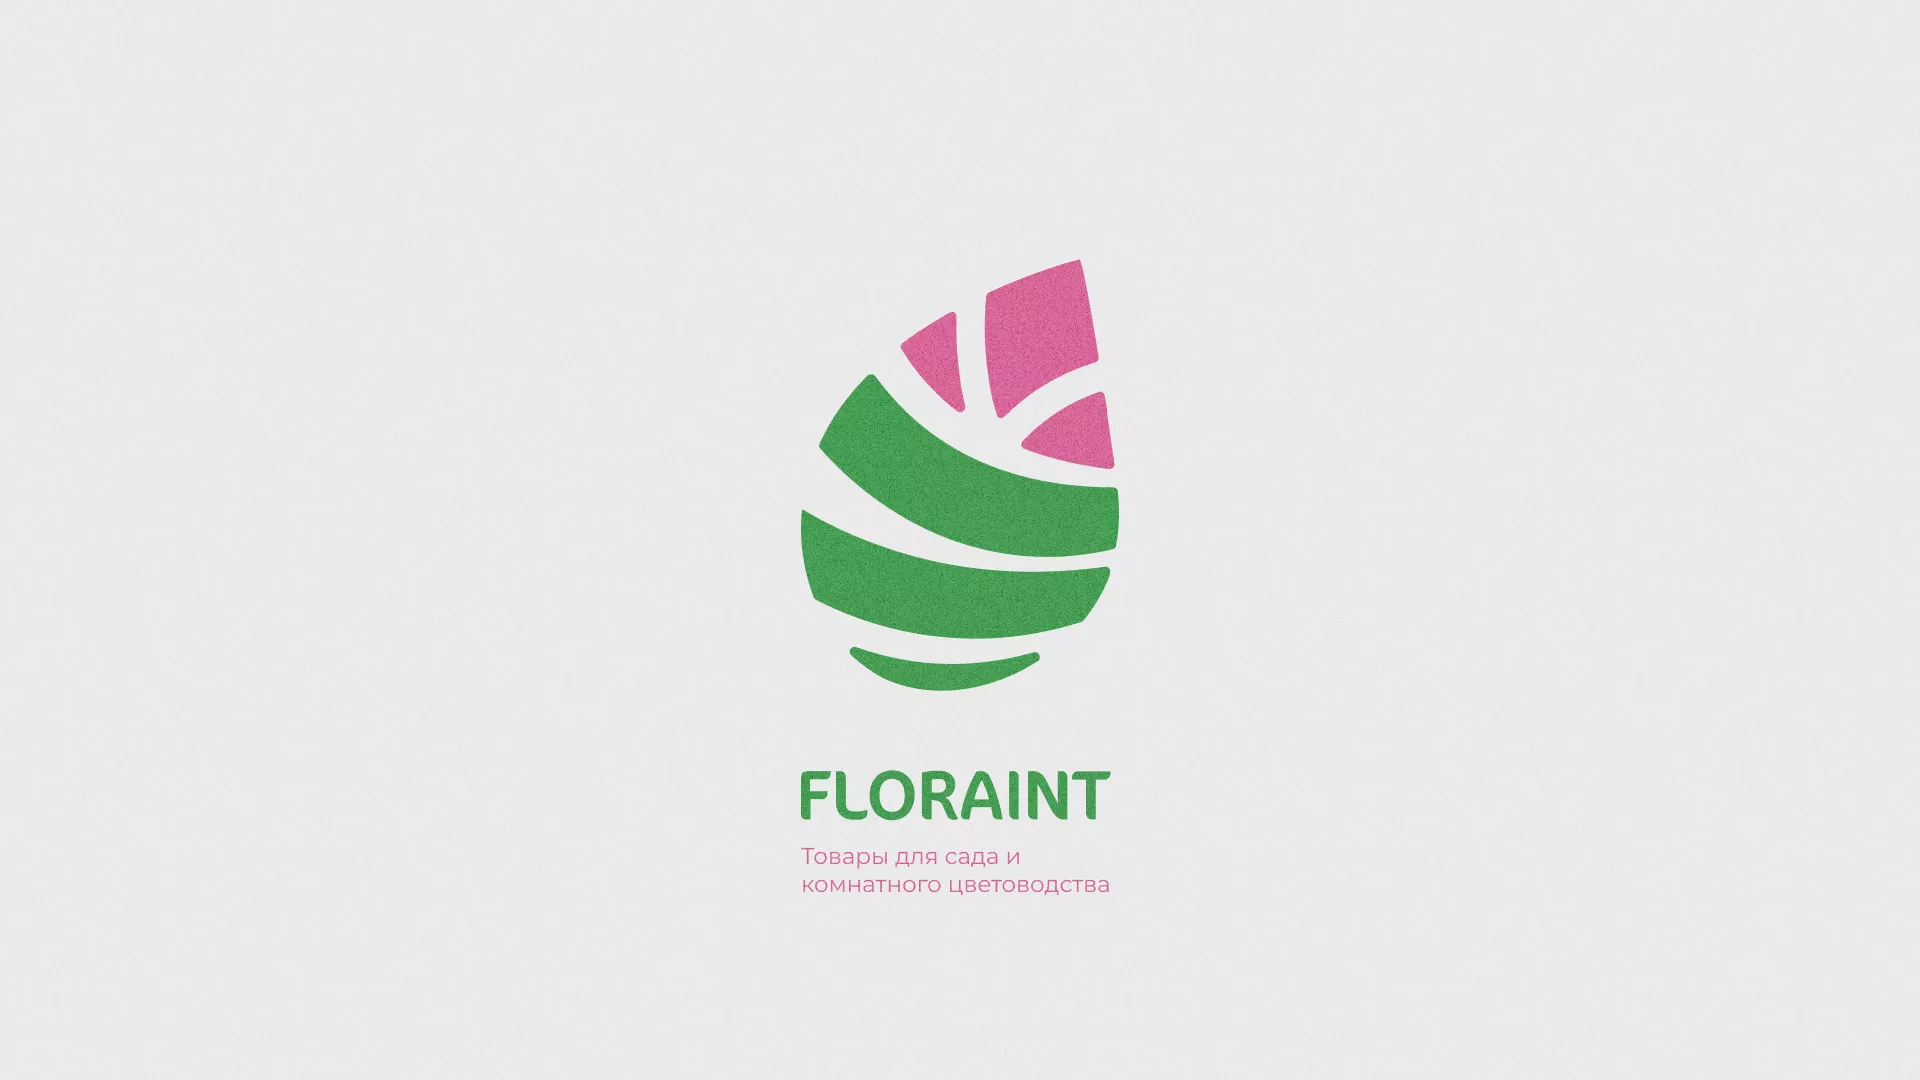 Разработка оформления профиля Instagram для магазина «Floraint» в Макарьеве